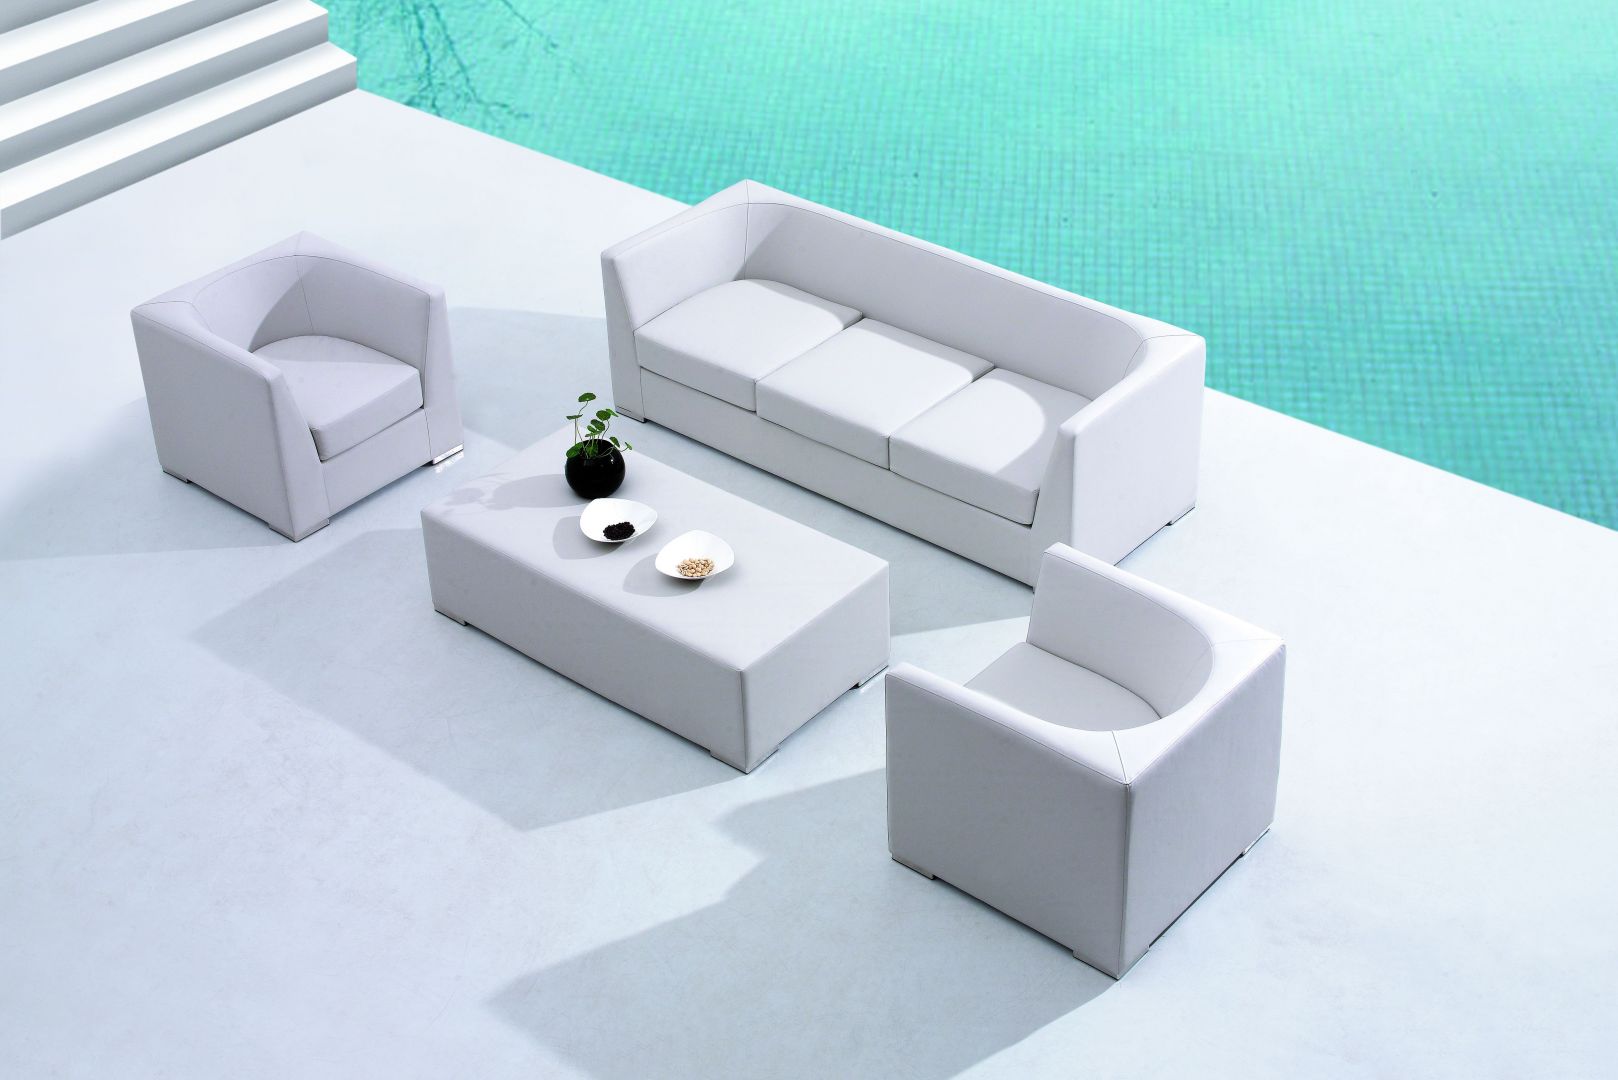 Zestaw wypoczynkowy Redford Miloo. Sofa, fotele, stolik kawowy wykończone w skórze jachtowej. Redford to meble wykonane w najnowocześniejszej technologii. Składają się z poszczególnych elementów, które można ze sobą zestawiać komponując meble według indywidualnych potrzeb. Dominujące barwy to odcienie szarości. Skóra jachtowa to gwarancja wieloletniego użytkowania mebli. Fot. House&More